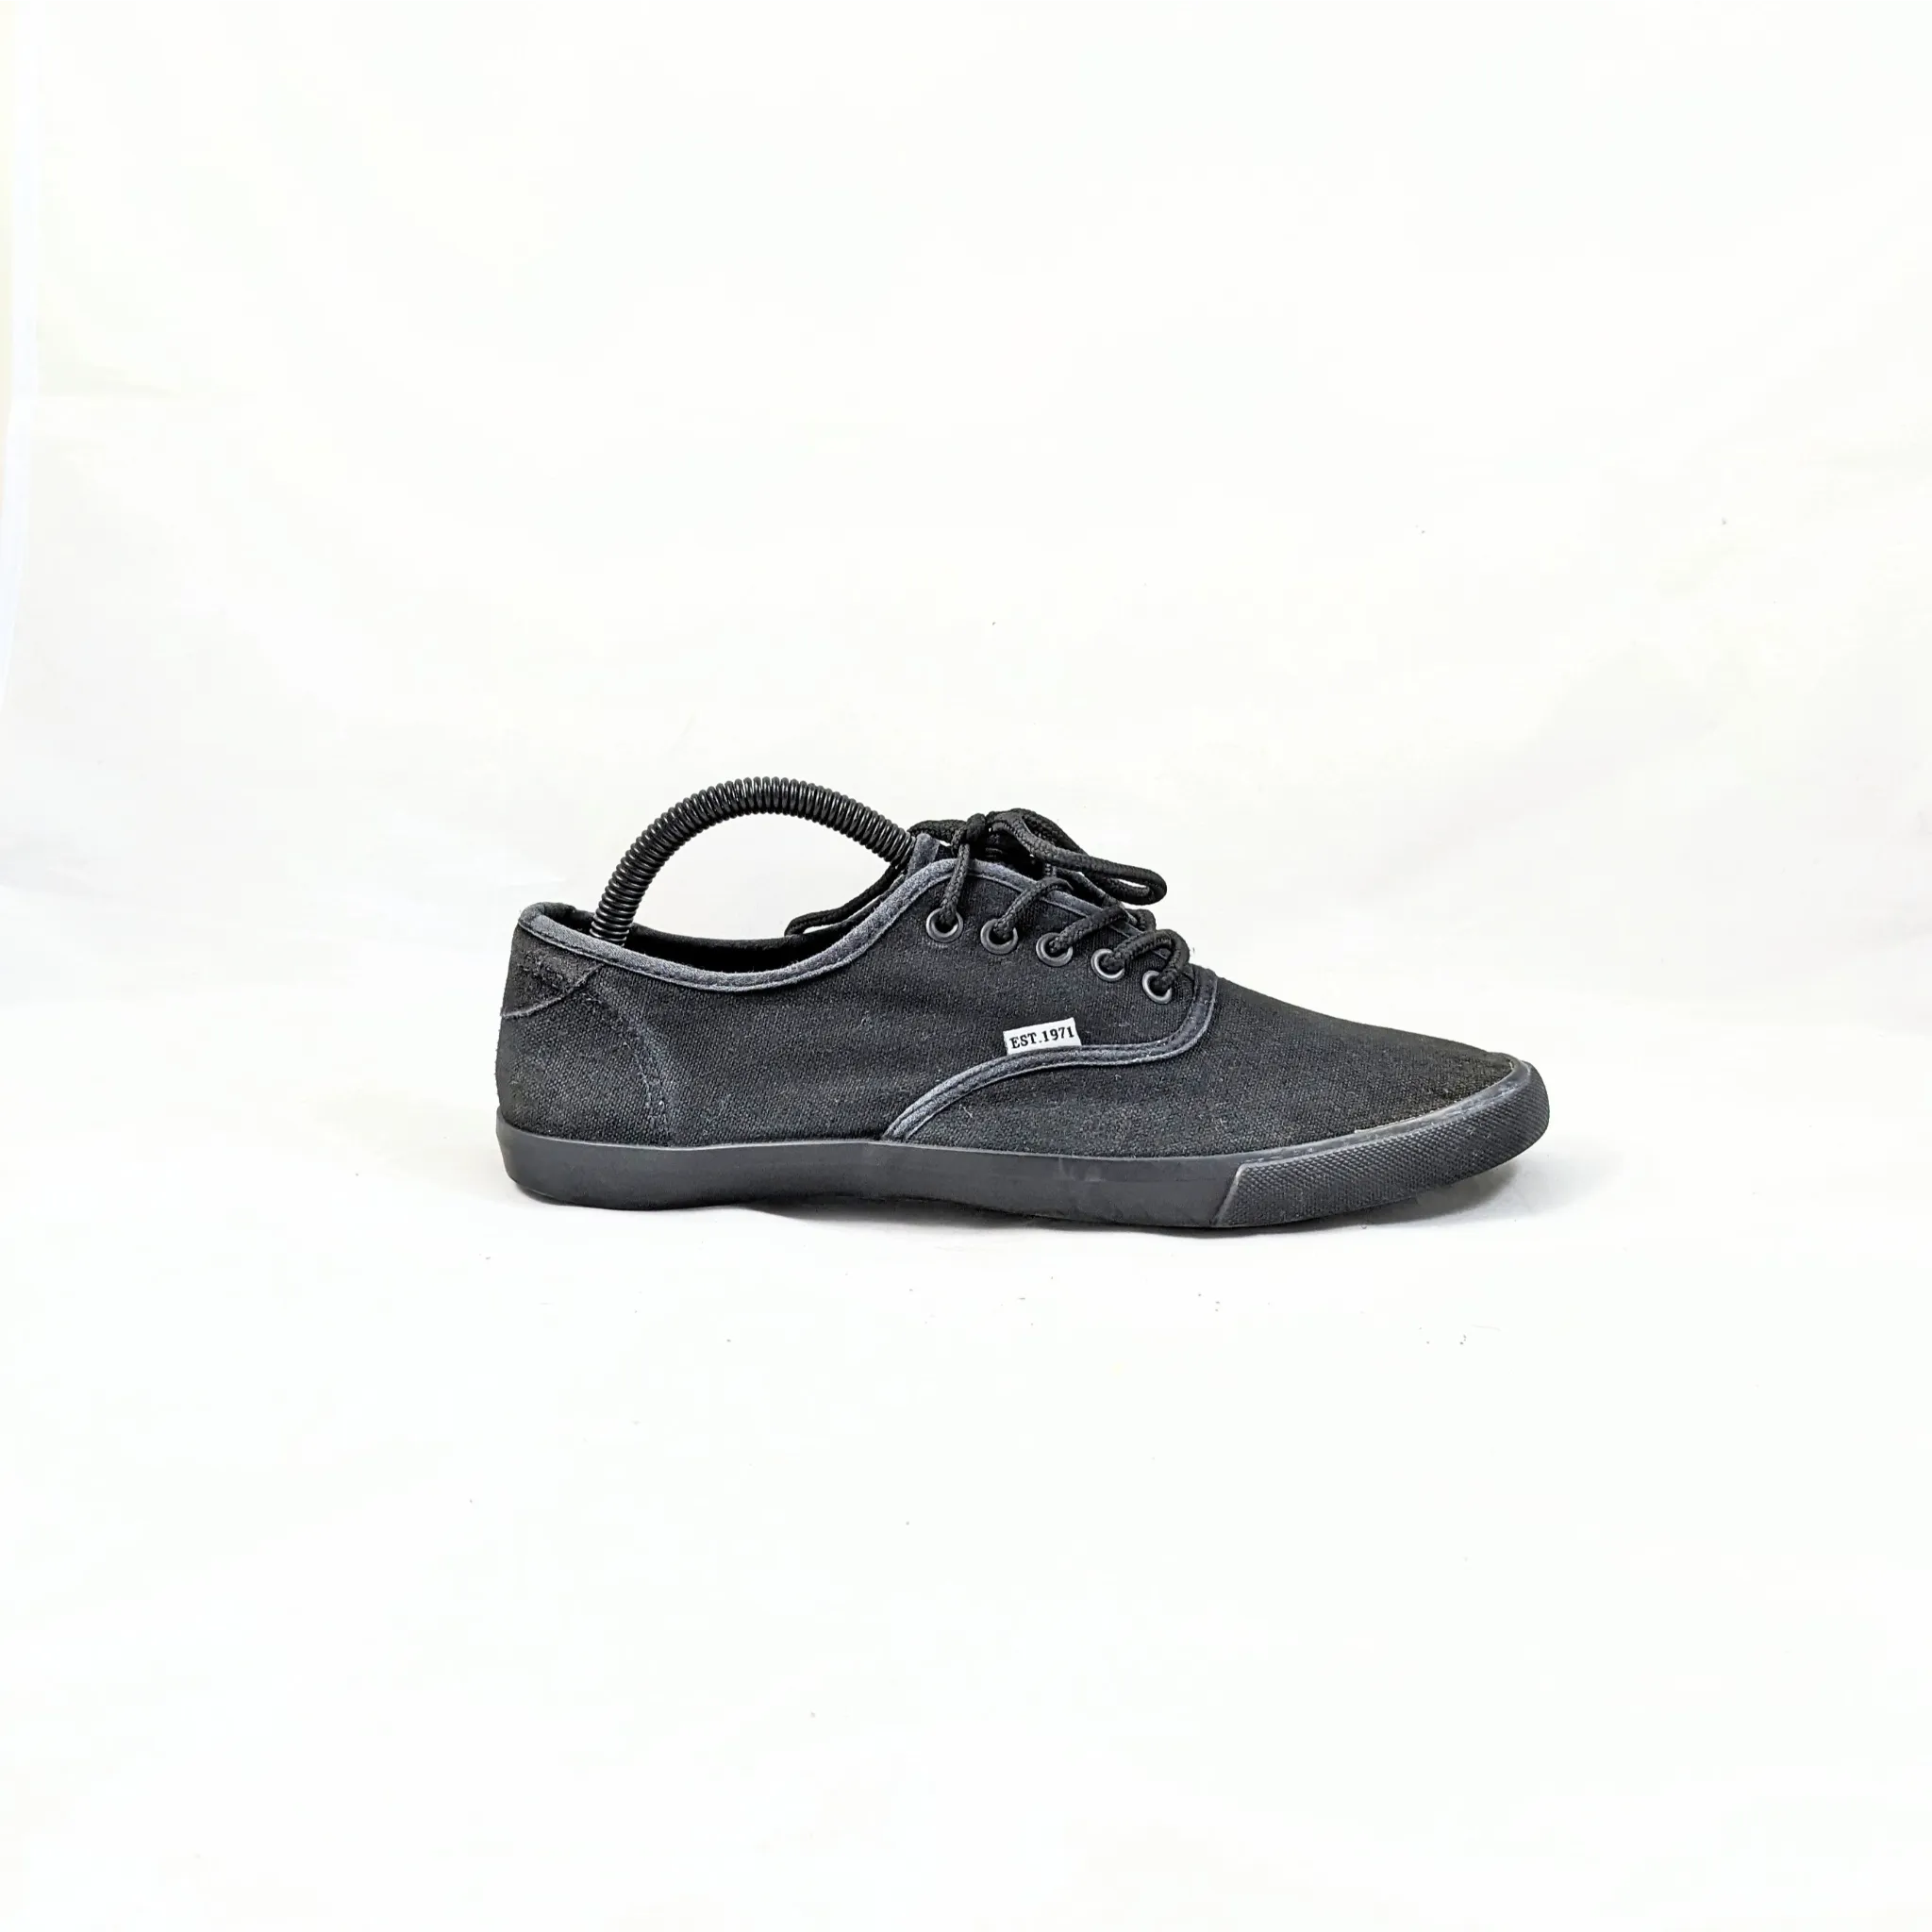 Heritage Black Sneakers Premium V